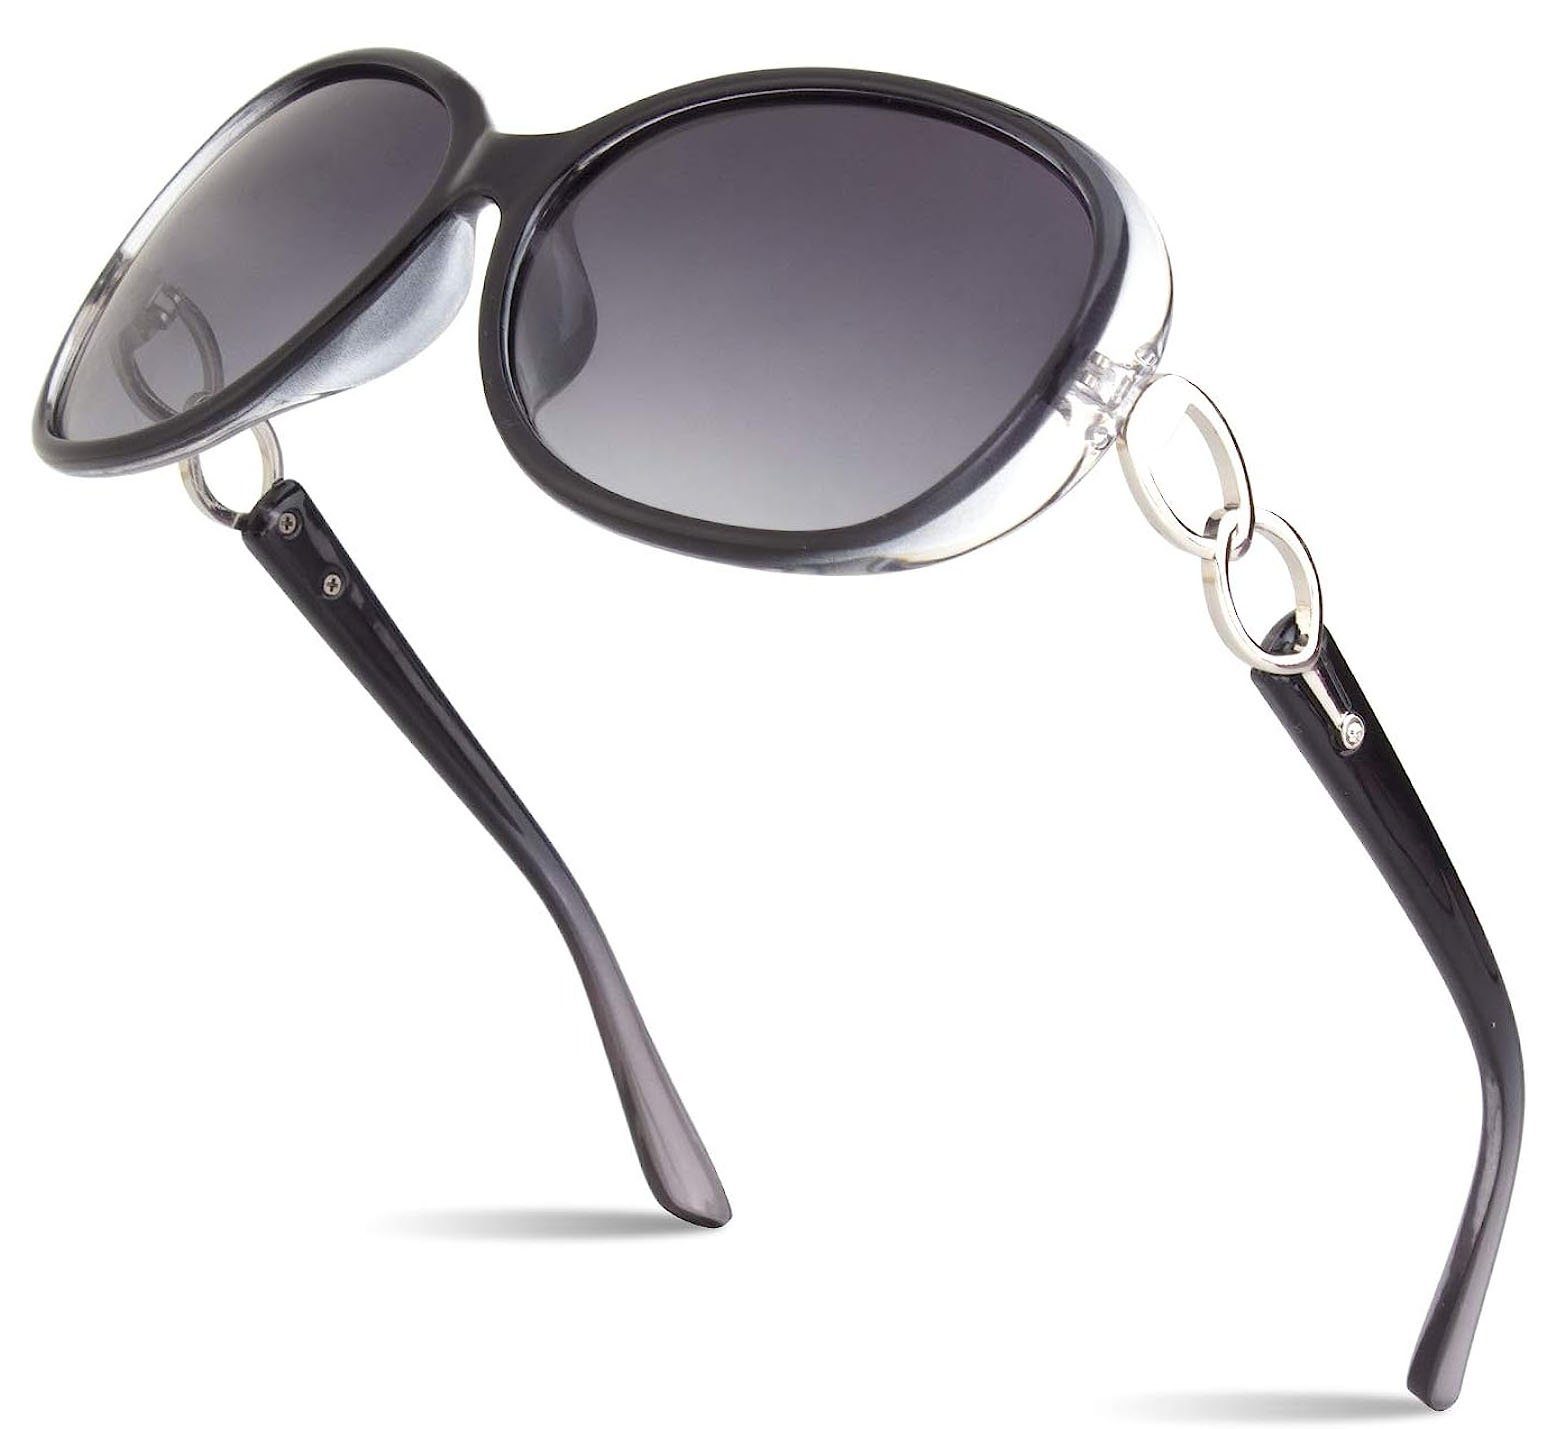 Haiaveng Sonnenbrille Sonnenbrille,Sonnenbrille Damen Polarisiert Mode Groß Klassische Vintage UV400 Brille